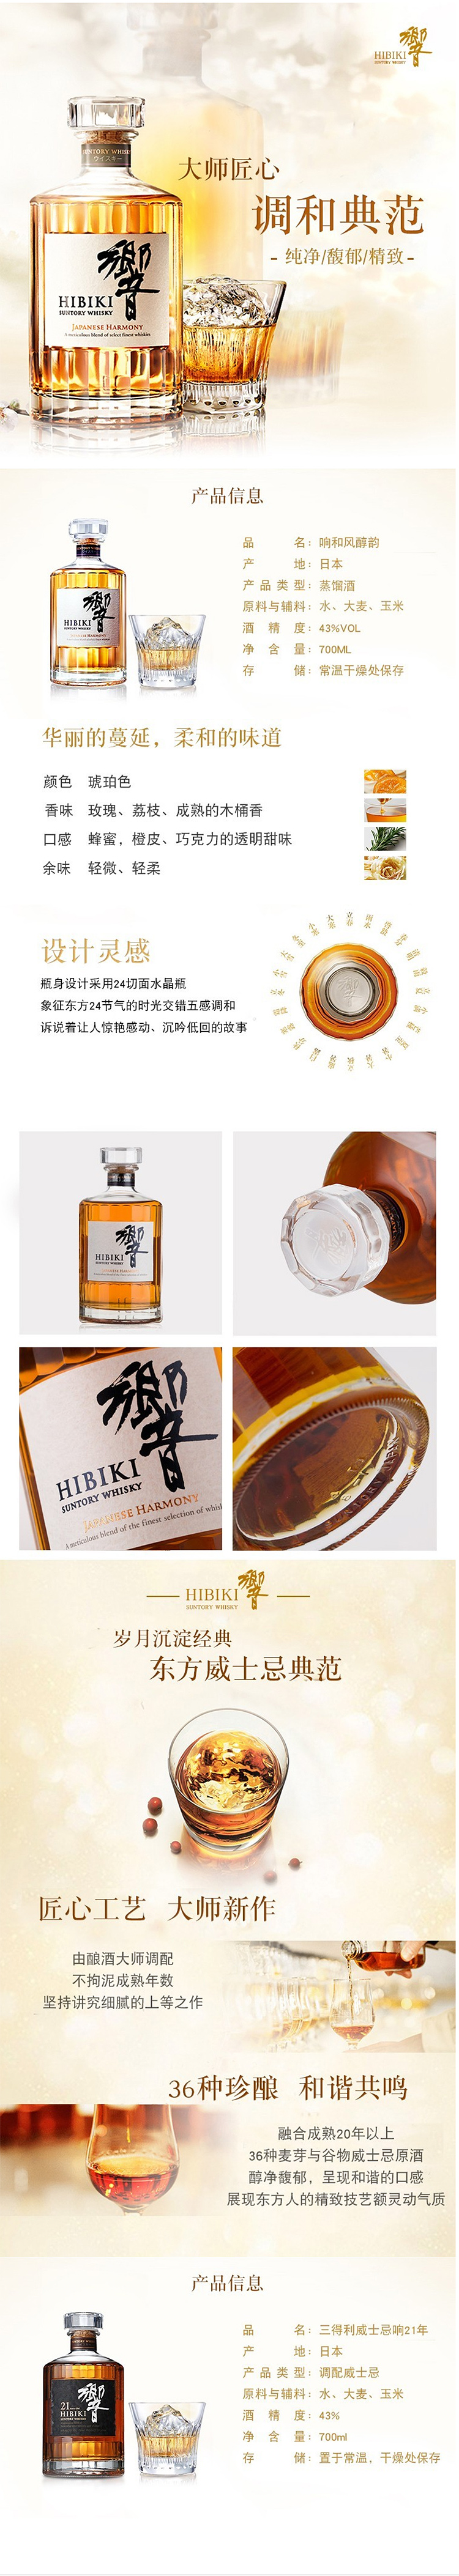 响(HIBIKI)洋酒响(HIBIKI) 17年日本原装进口威士忌洋酒700ml/瓶【价格 